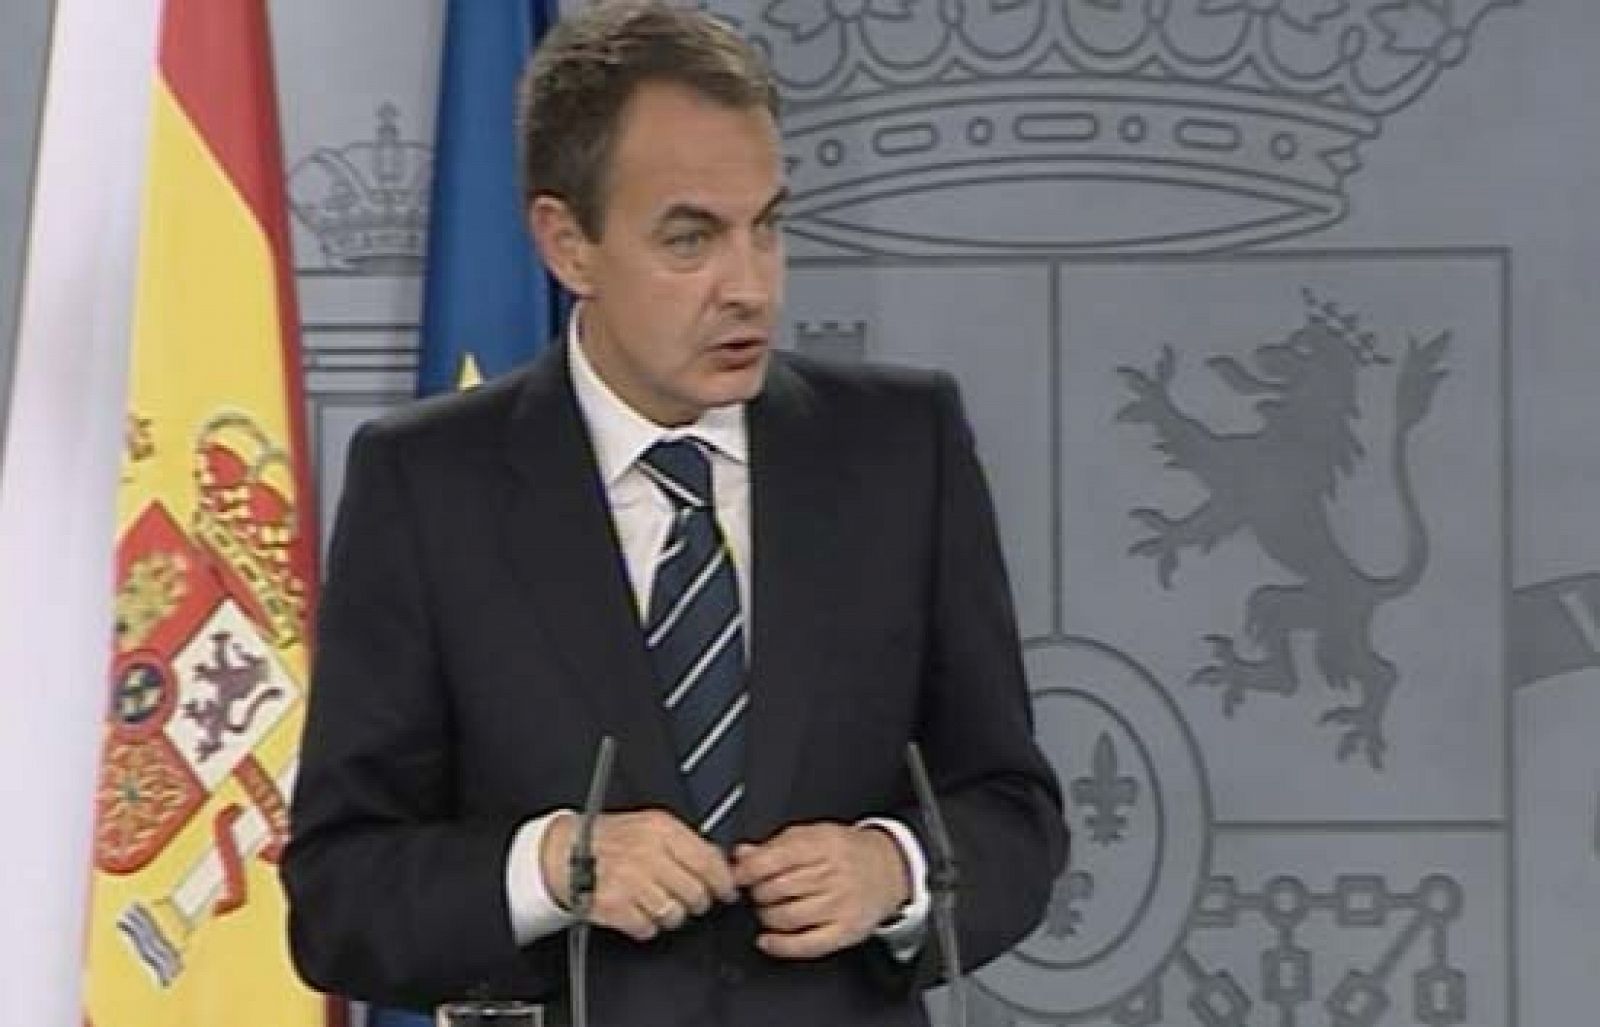 El presidente del Gobierno, Jose Luis Rodríguez Zapatero, ha decidido asumir personalmente la competencia de Deportes, que hasta ahora dependía del Ministerio de Educación. 